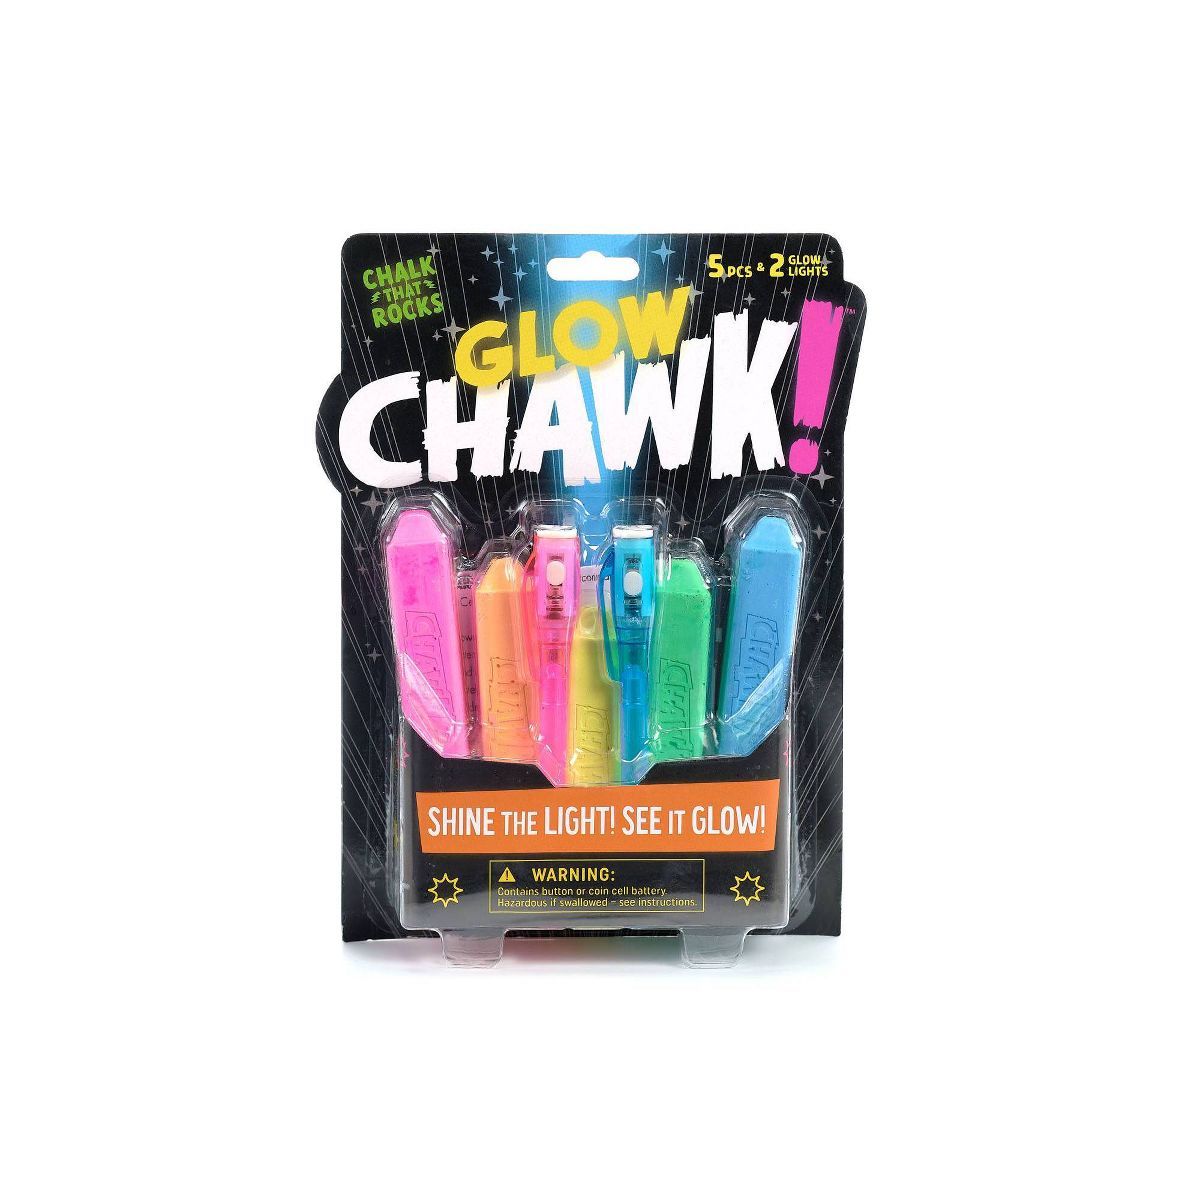 Chuckle & Roar Glow Chawk! - 5pc | Target